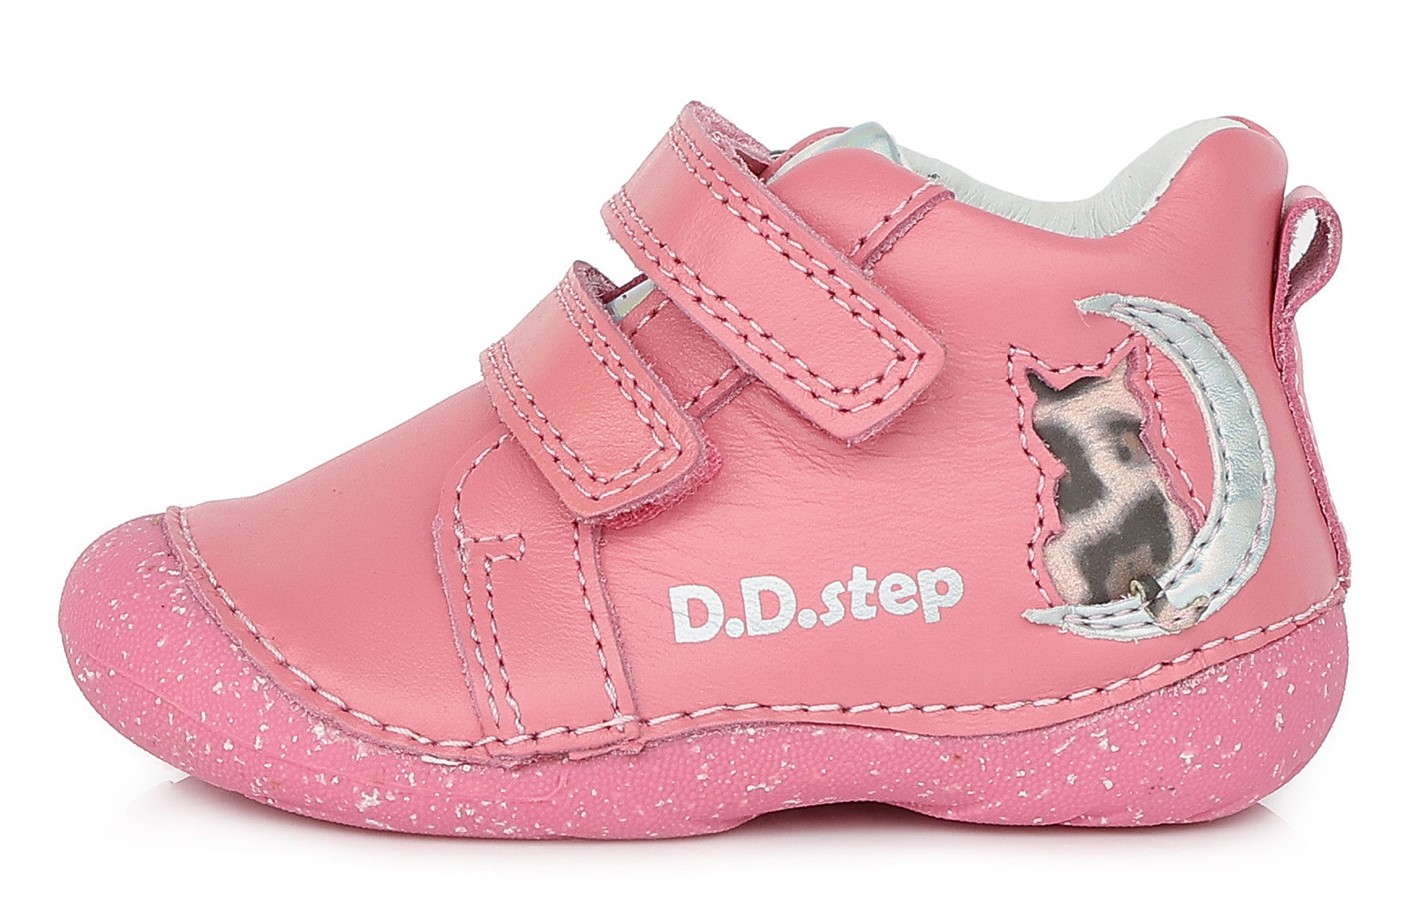 Dětské celoroční boty D.D.step 015-353 růžové Velikost: 22 (EU)